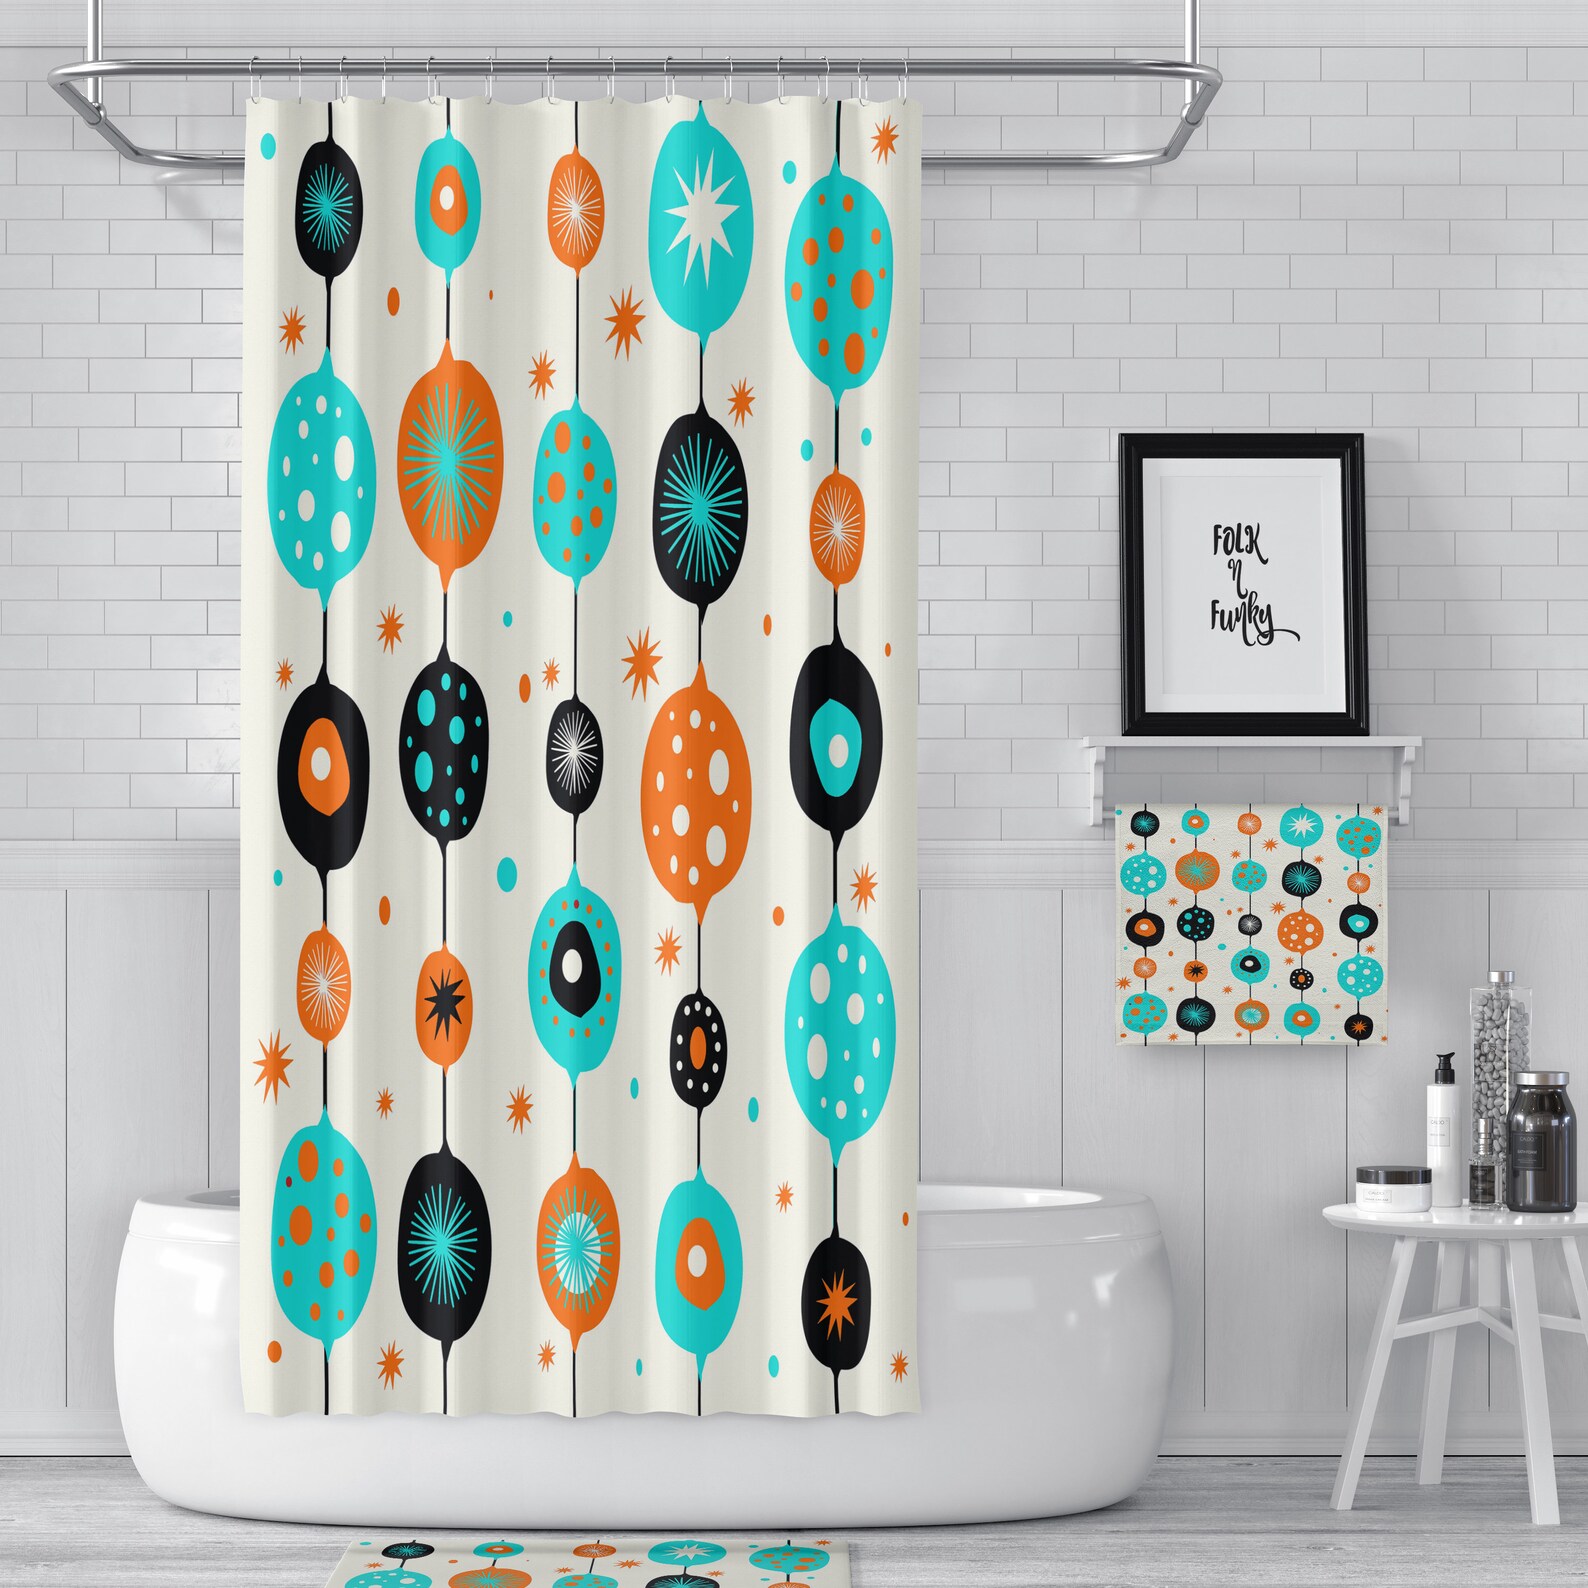 Cortina de ducha decoración opcional del baño tema moderno de | Etsy